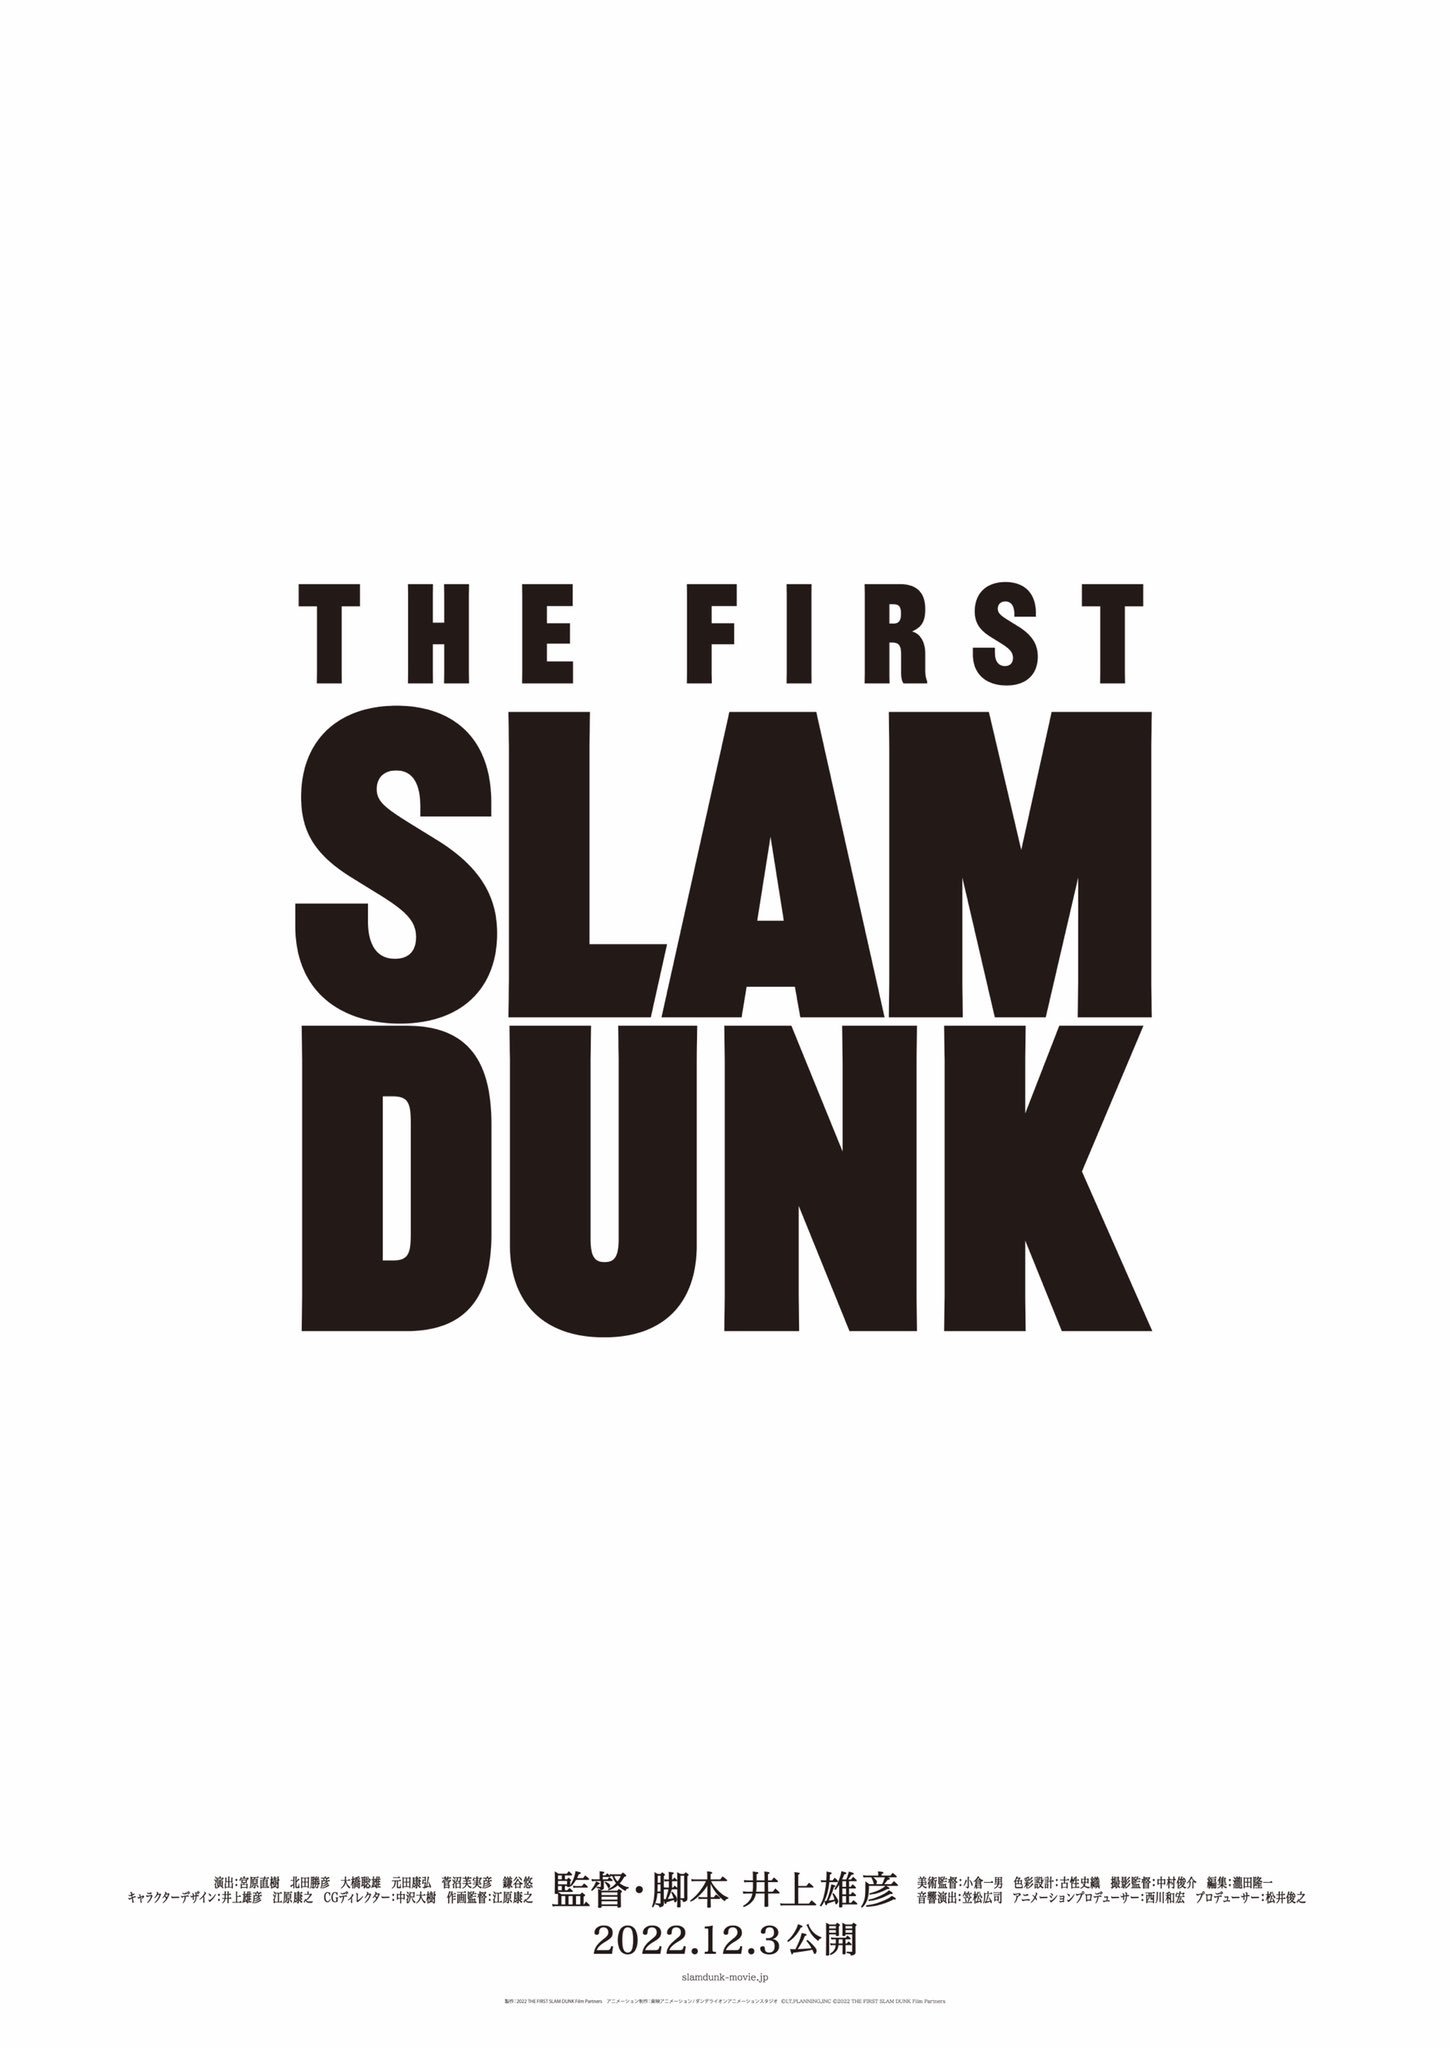 灌篮高手的新电影《THE FIRST SLAM DUNK》12月3日上映插图